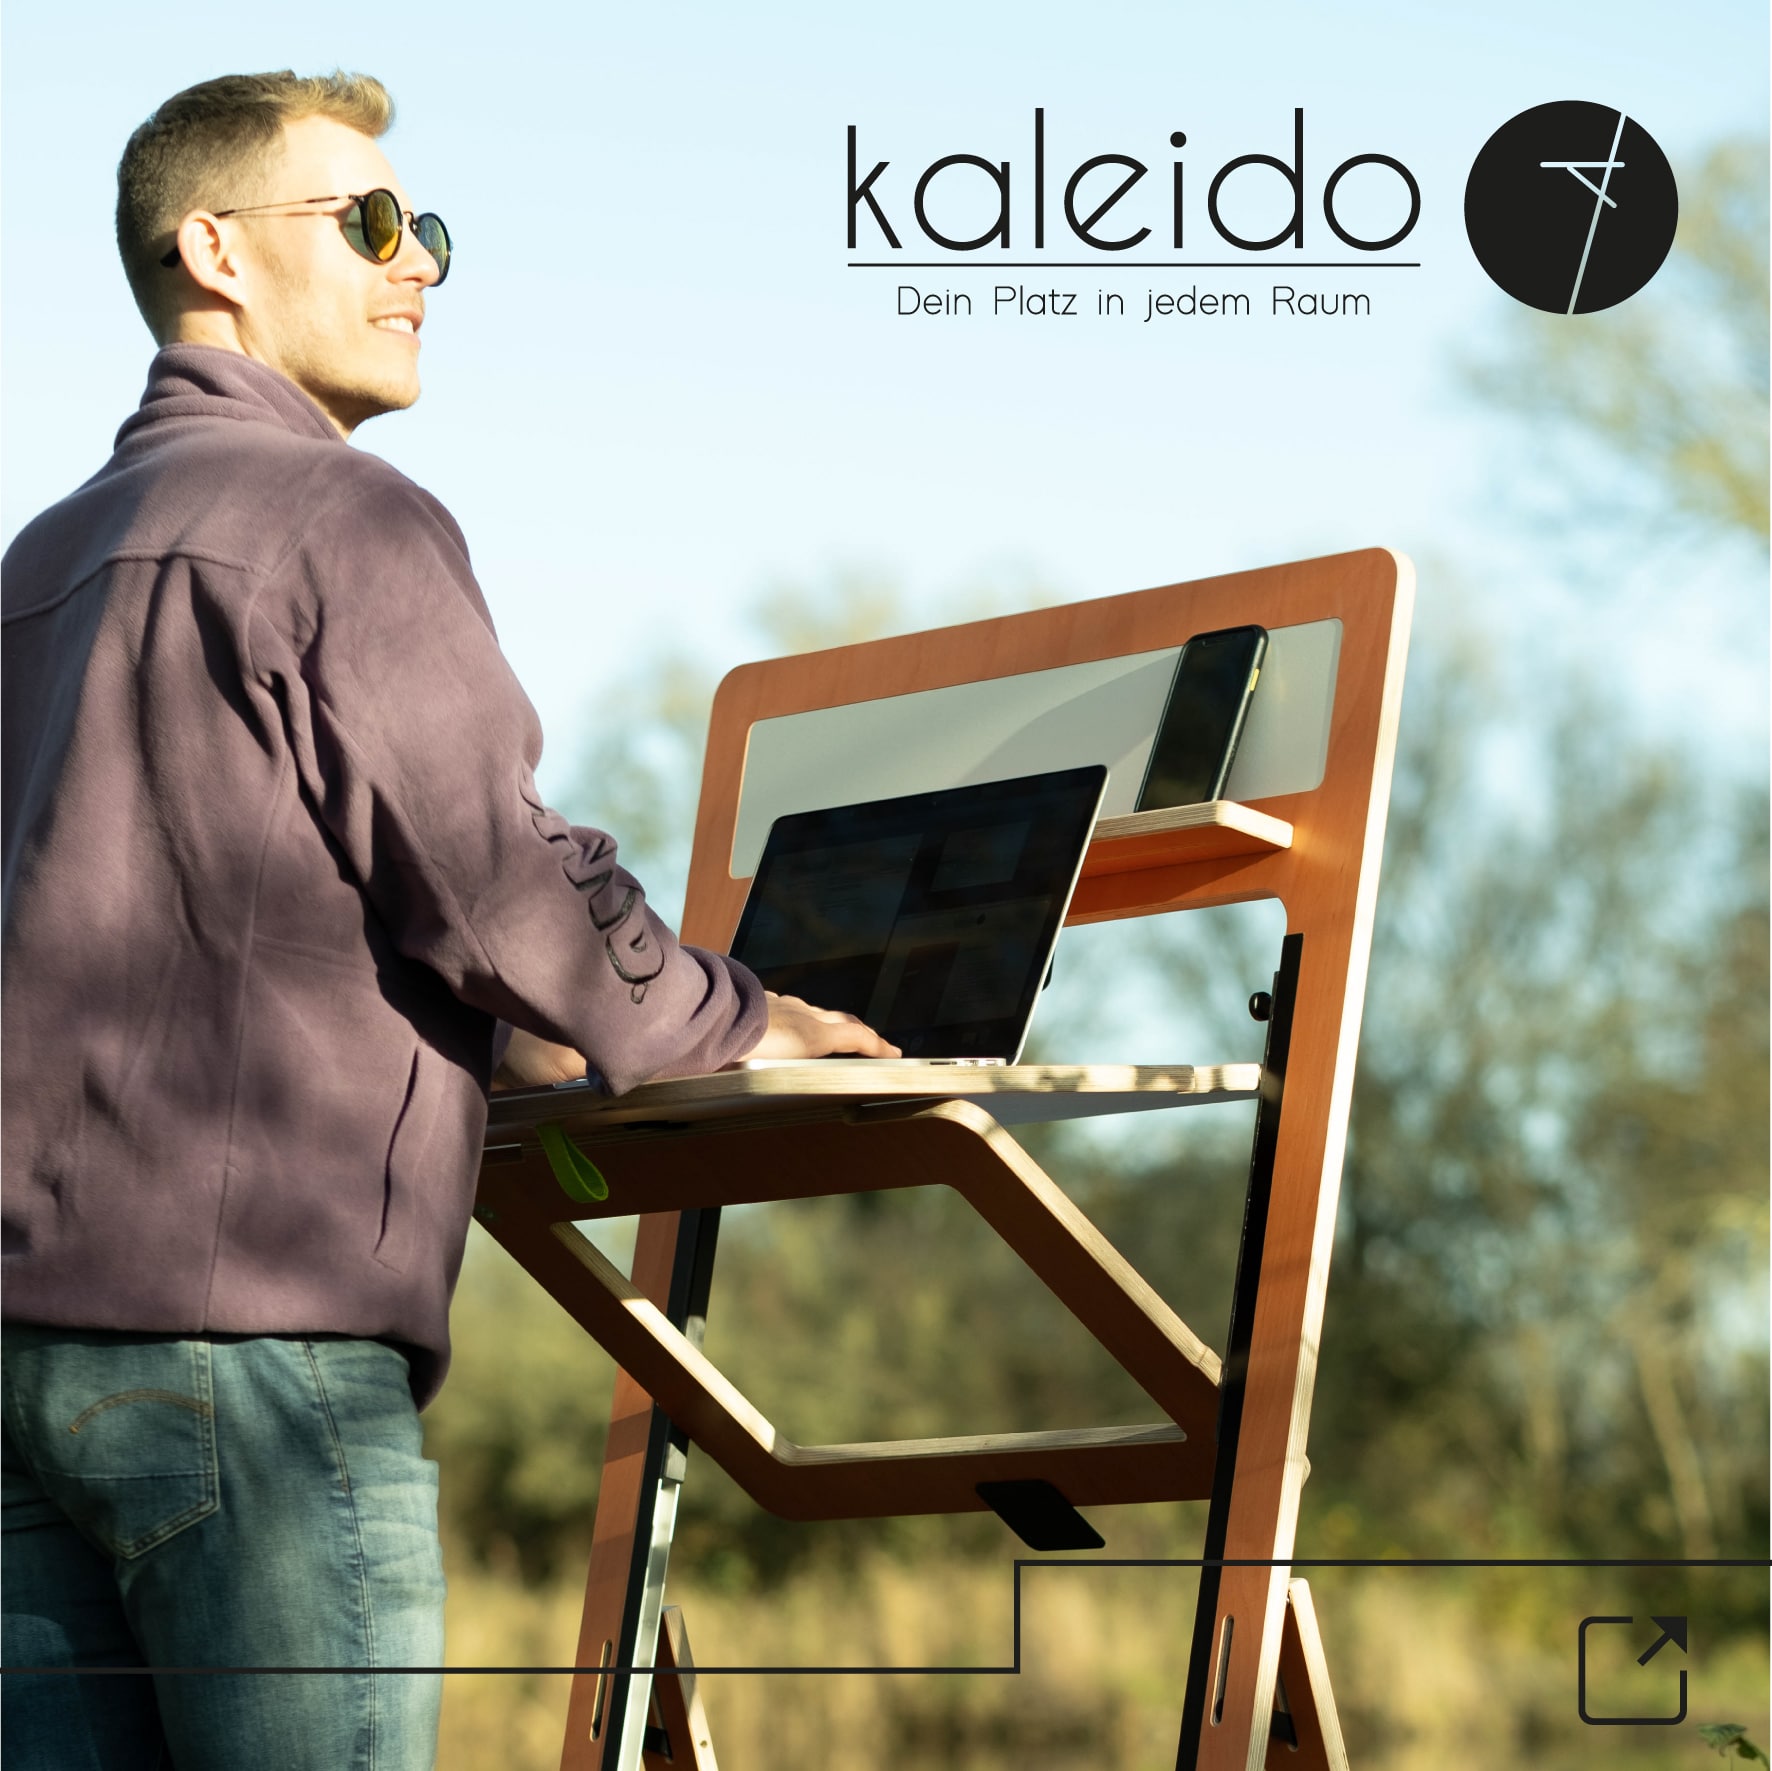 Der Kaleido ist ein universeller Klapptisch für das Homeoffice und alle, die wenig Platz haben. Super inovativ und nachhaltig gebaut von Winkels Interior.